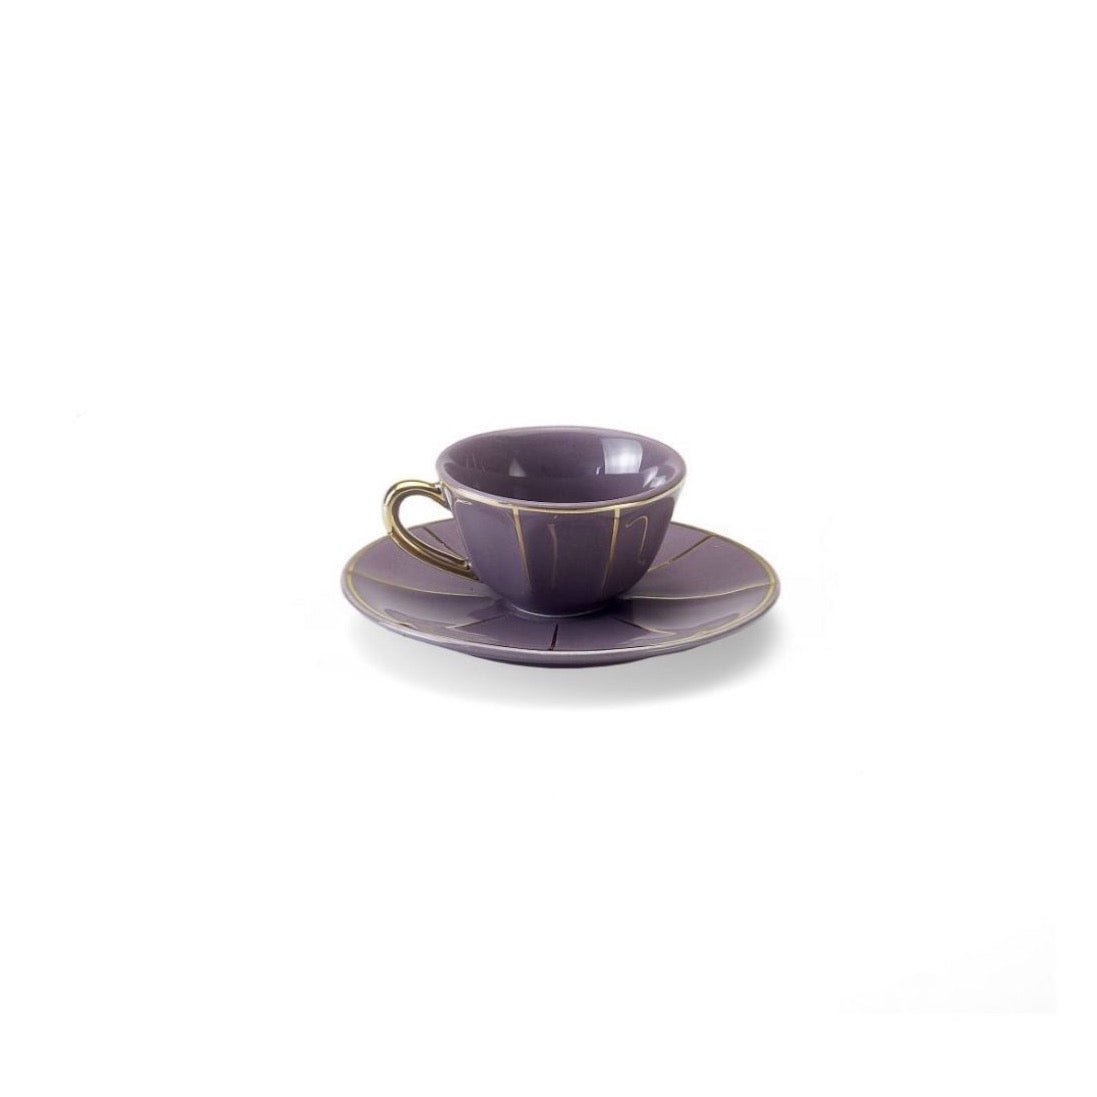 Petite tasse à café Violet - Maison Caldeira